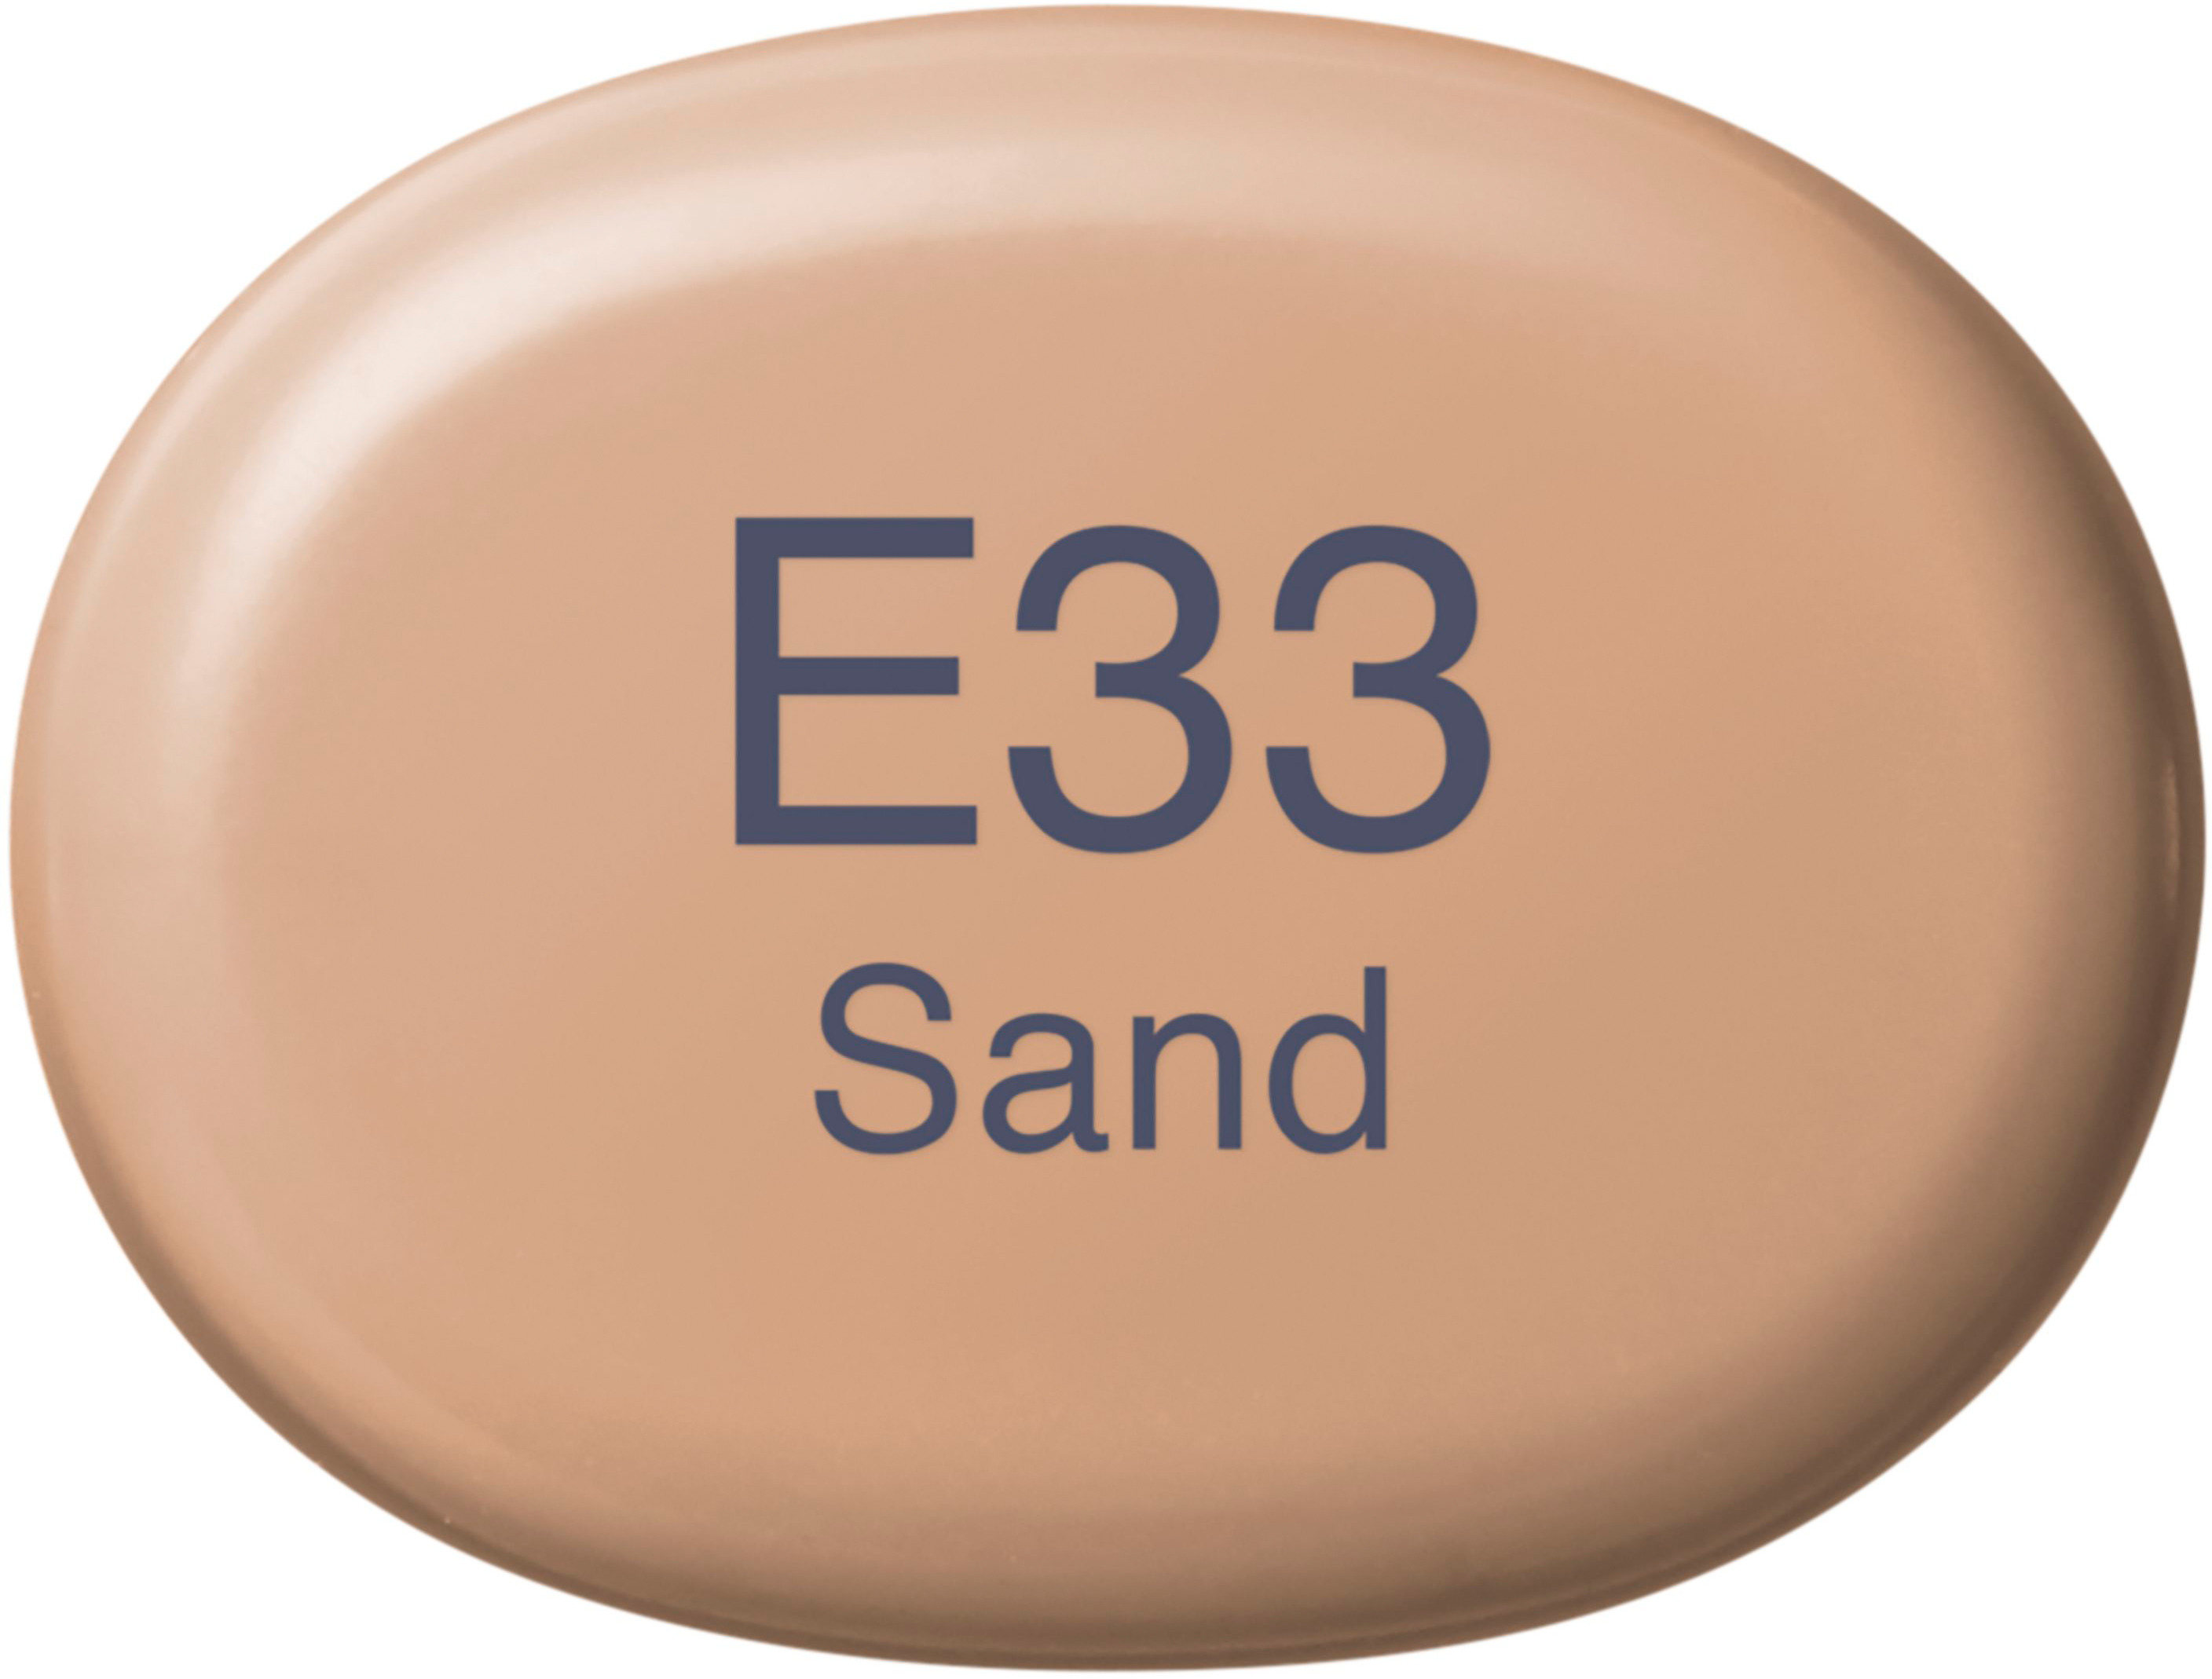 COPIC Marker Sketch 2107553 E33 - Sand